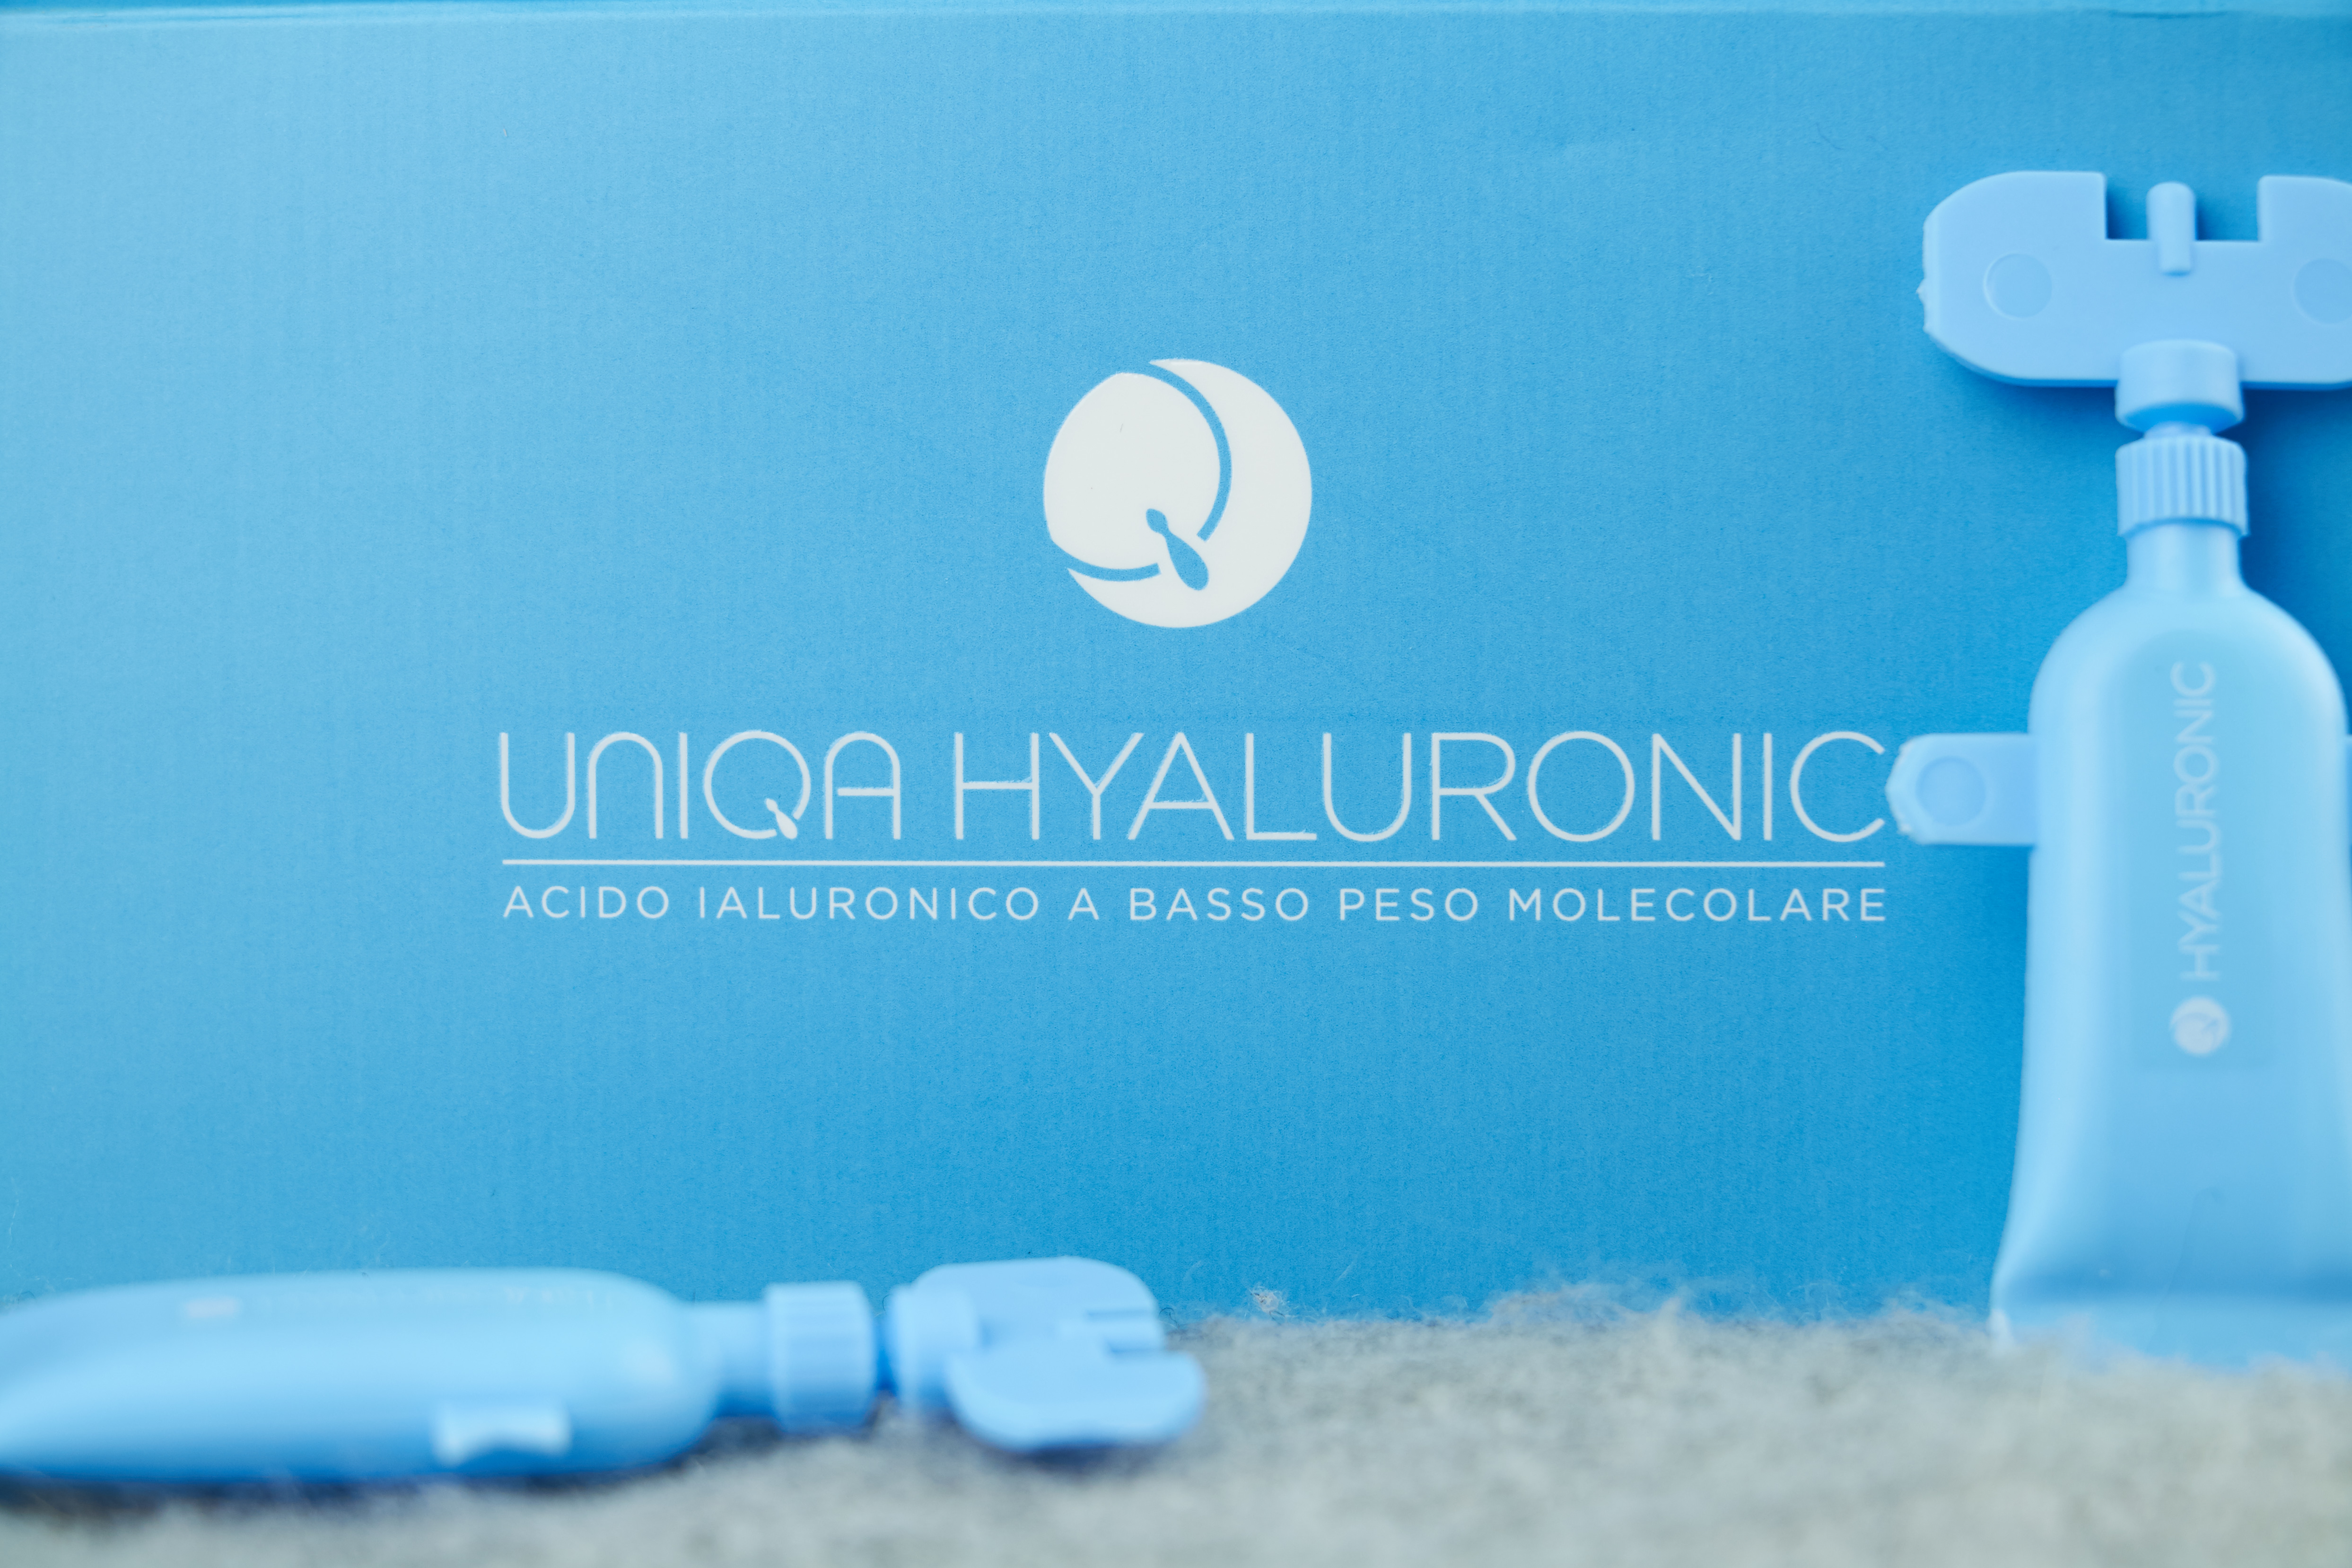 Uniqa Hyaluronic acido ialuronico